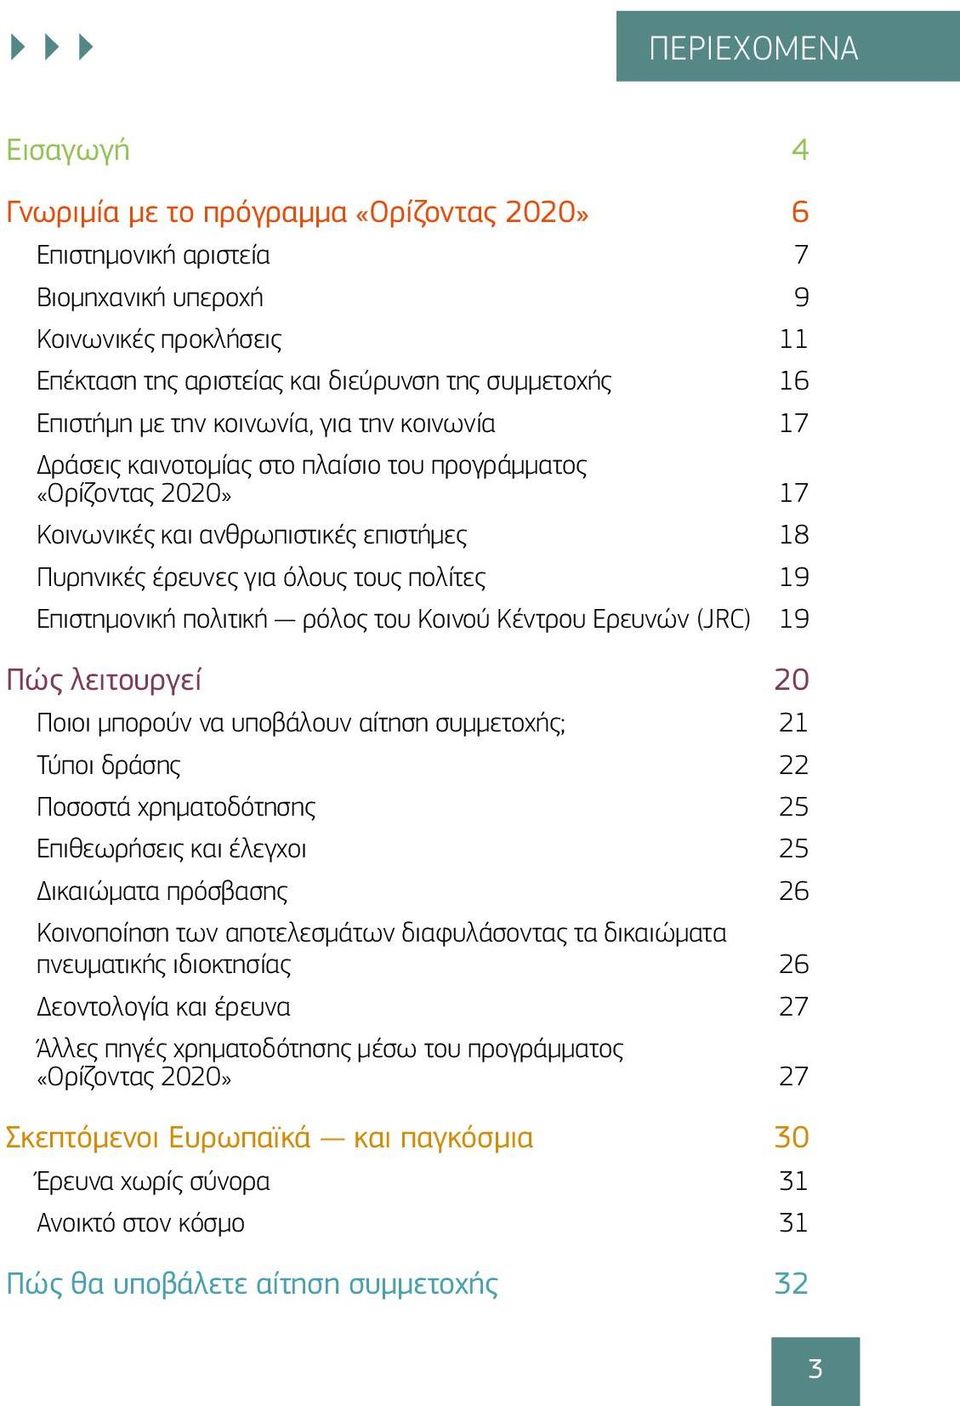 19 Επιστημονική πολιτική ρόλος του Κοινού Κέντρου Ερευνών (JRC) 19 Πώς λειτουργεί 20 Ποιοι μπορούν να υποβάλουν αίτηση συμμετοχής; 21 Τύποι δράσης 22 Ποσοστά χρηματοδότησης 25 Επιθεωρήσεις και